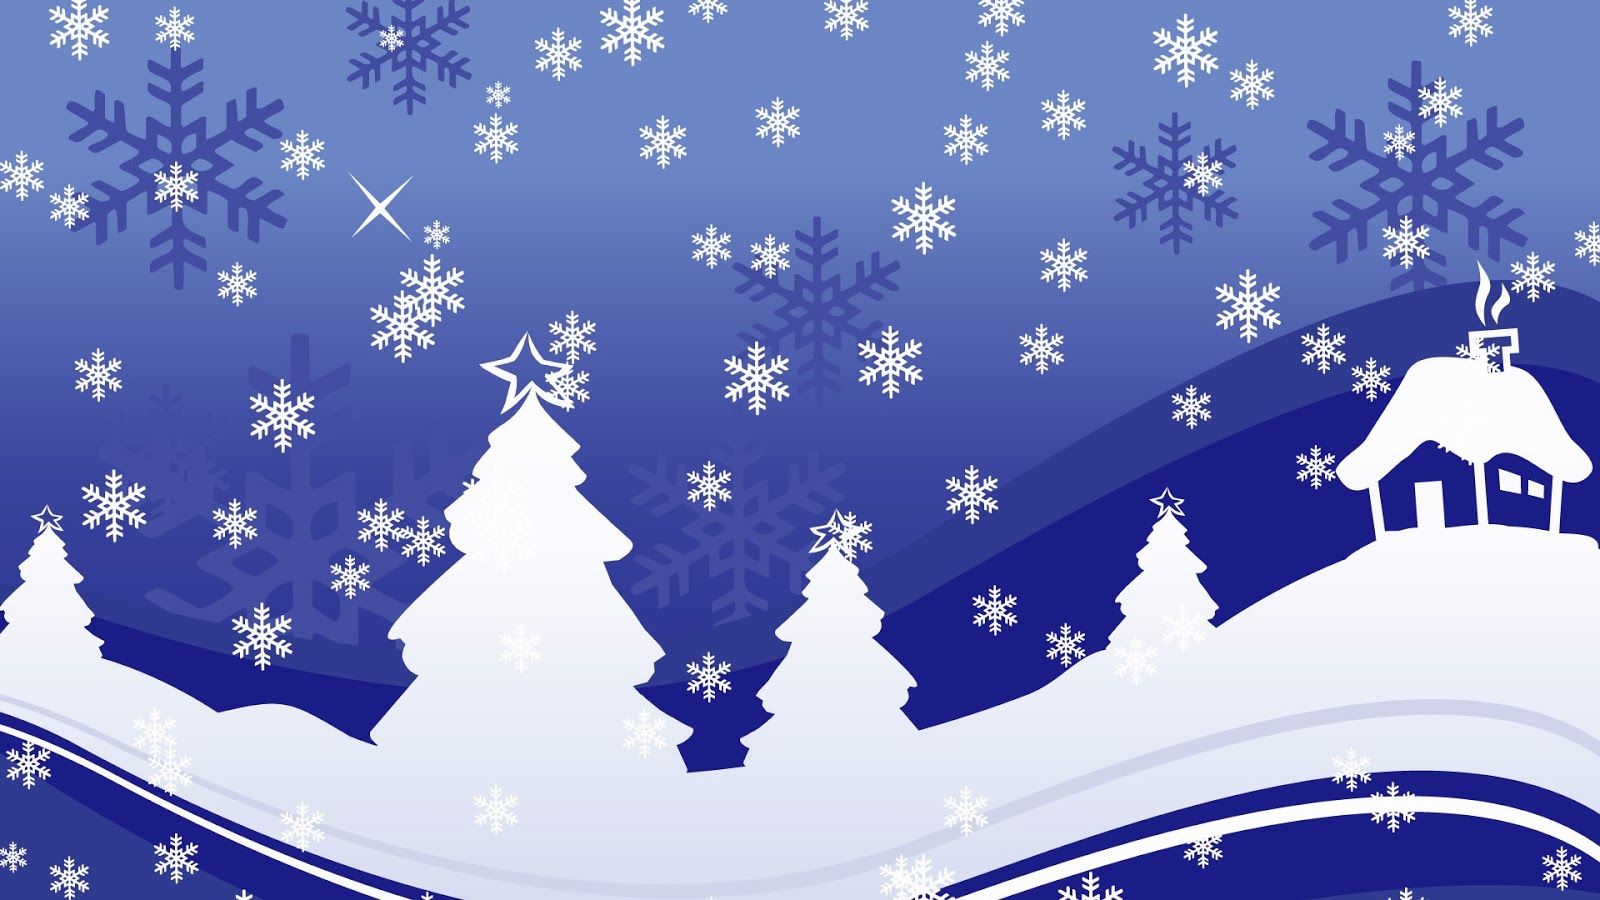 HoraBuena.com: Feliz Navidad! de Navidad sobre los pinos